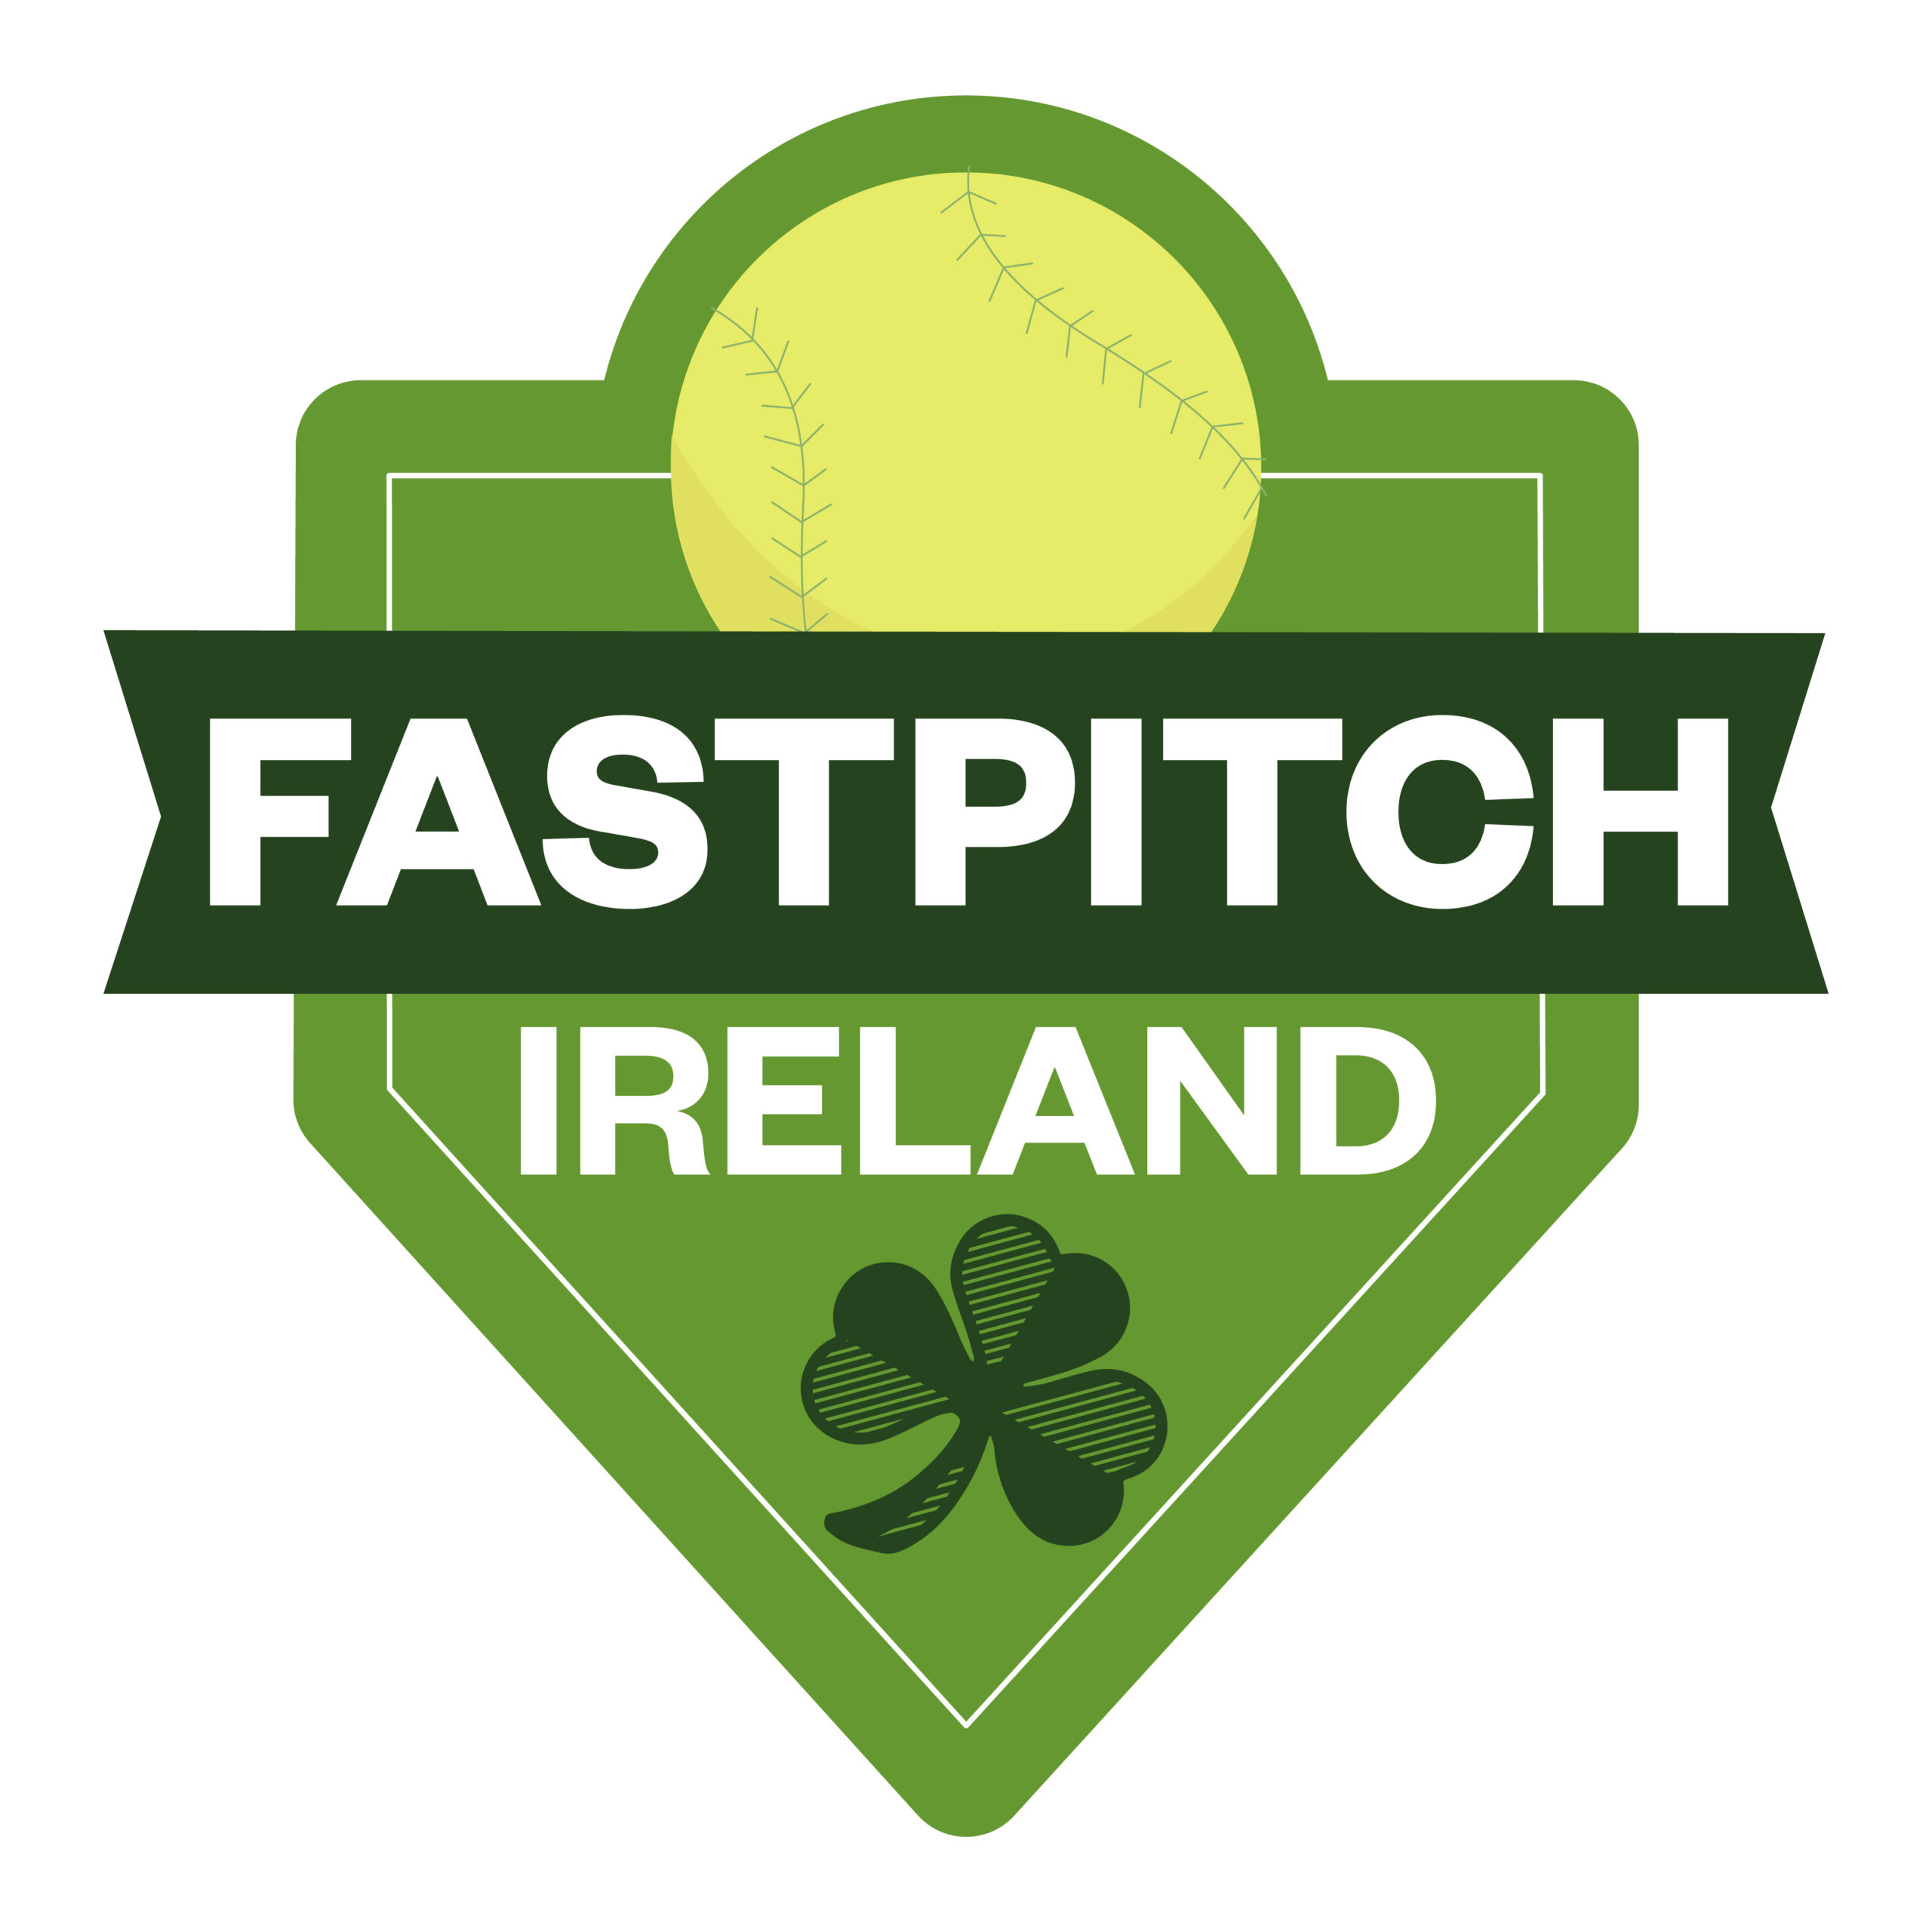 Fastpitch Ireland